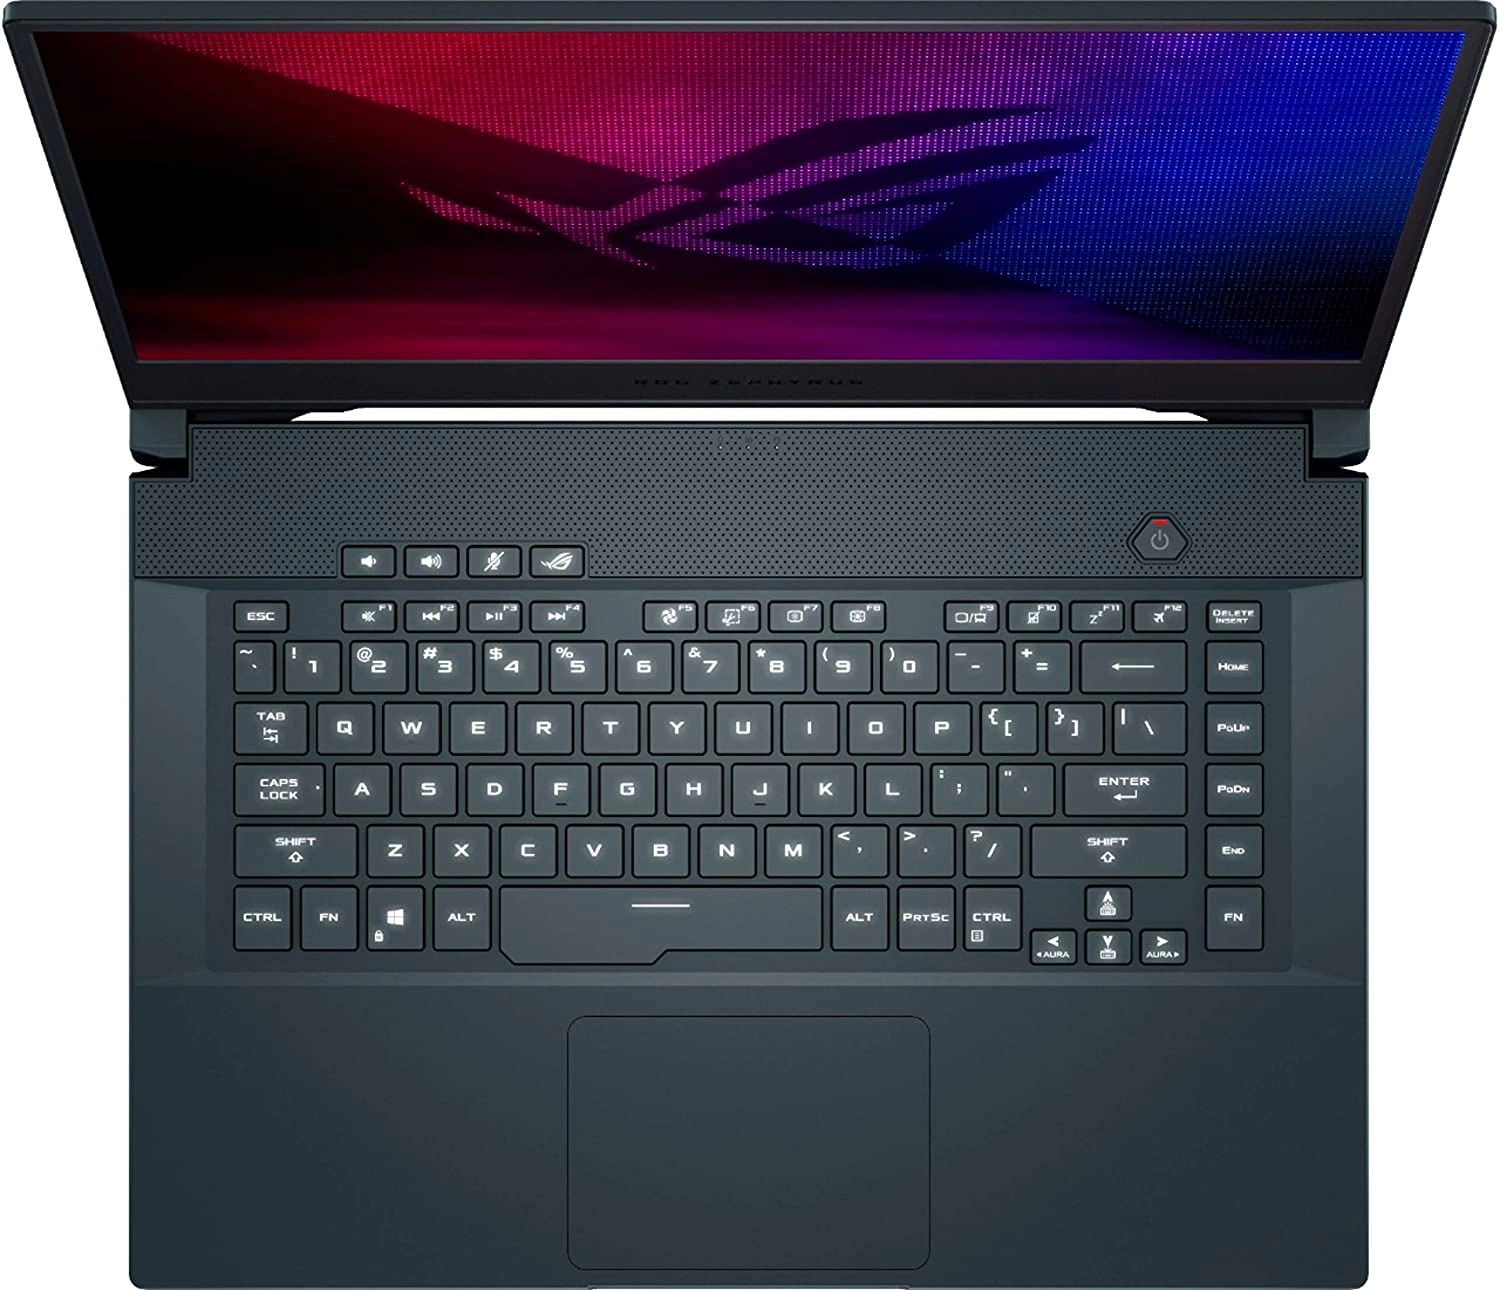 Asus M15 laptop image